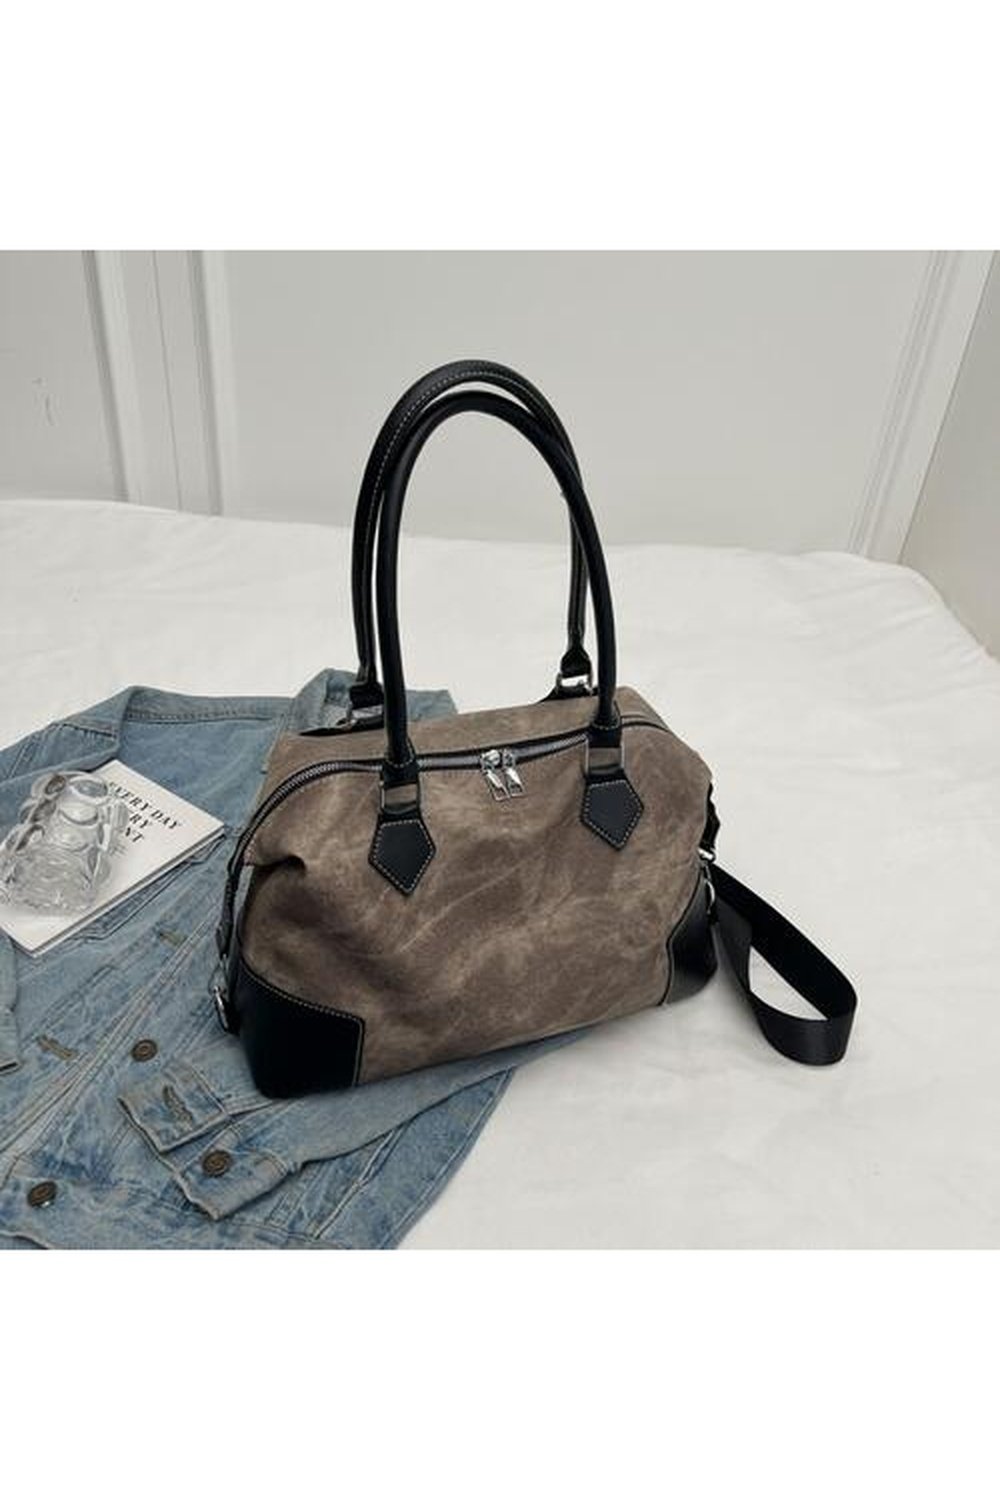 Contrast PU Leather Shoulder Bag - Handbag - FITGGINS